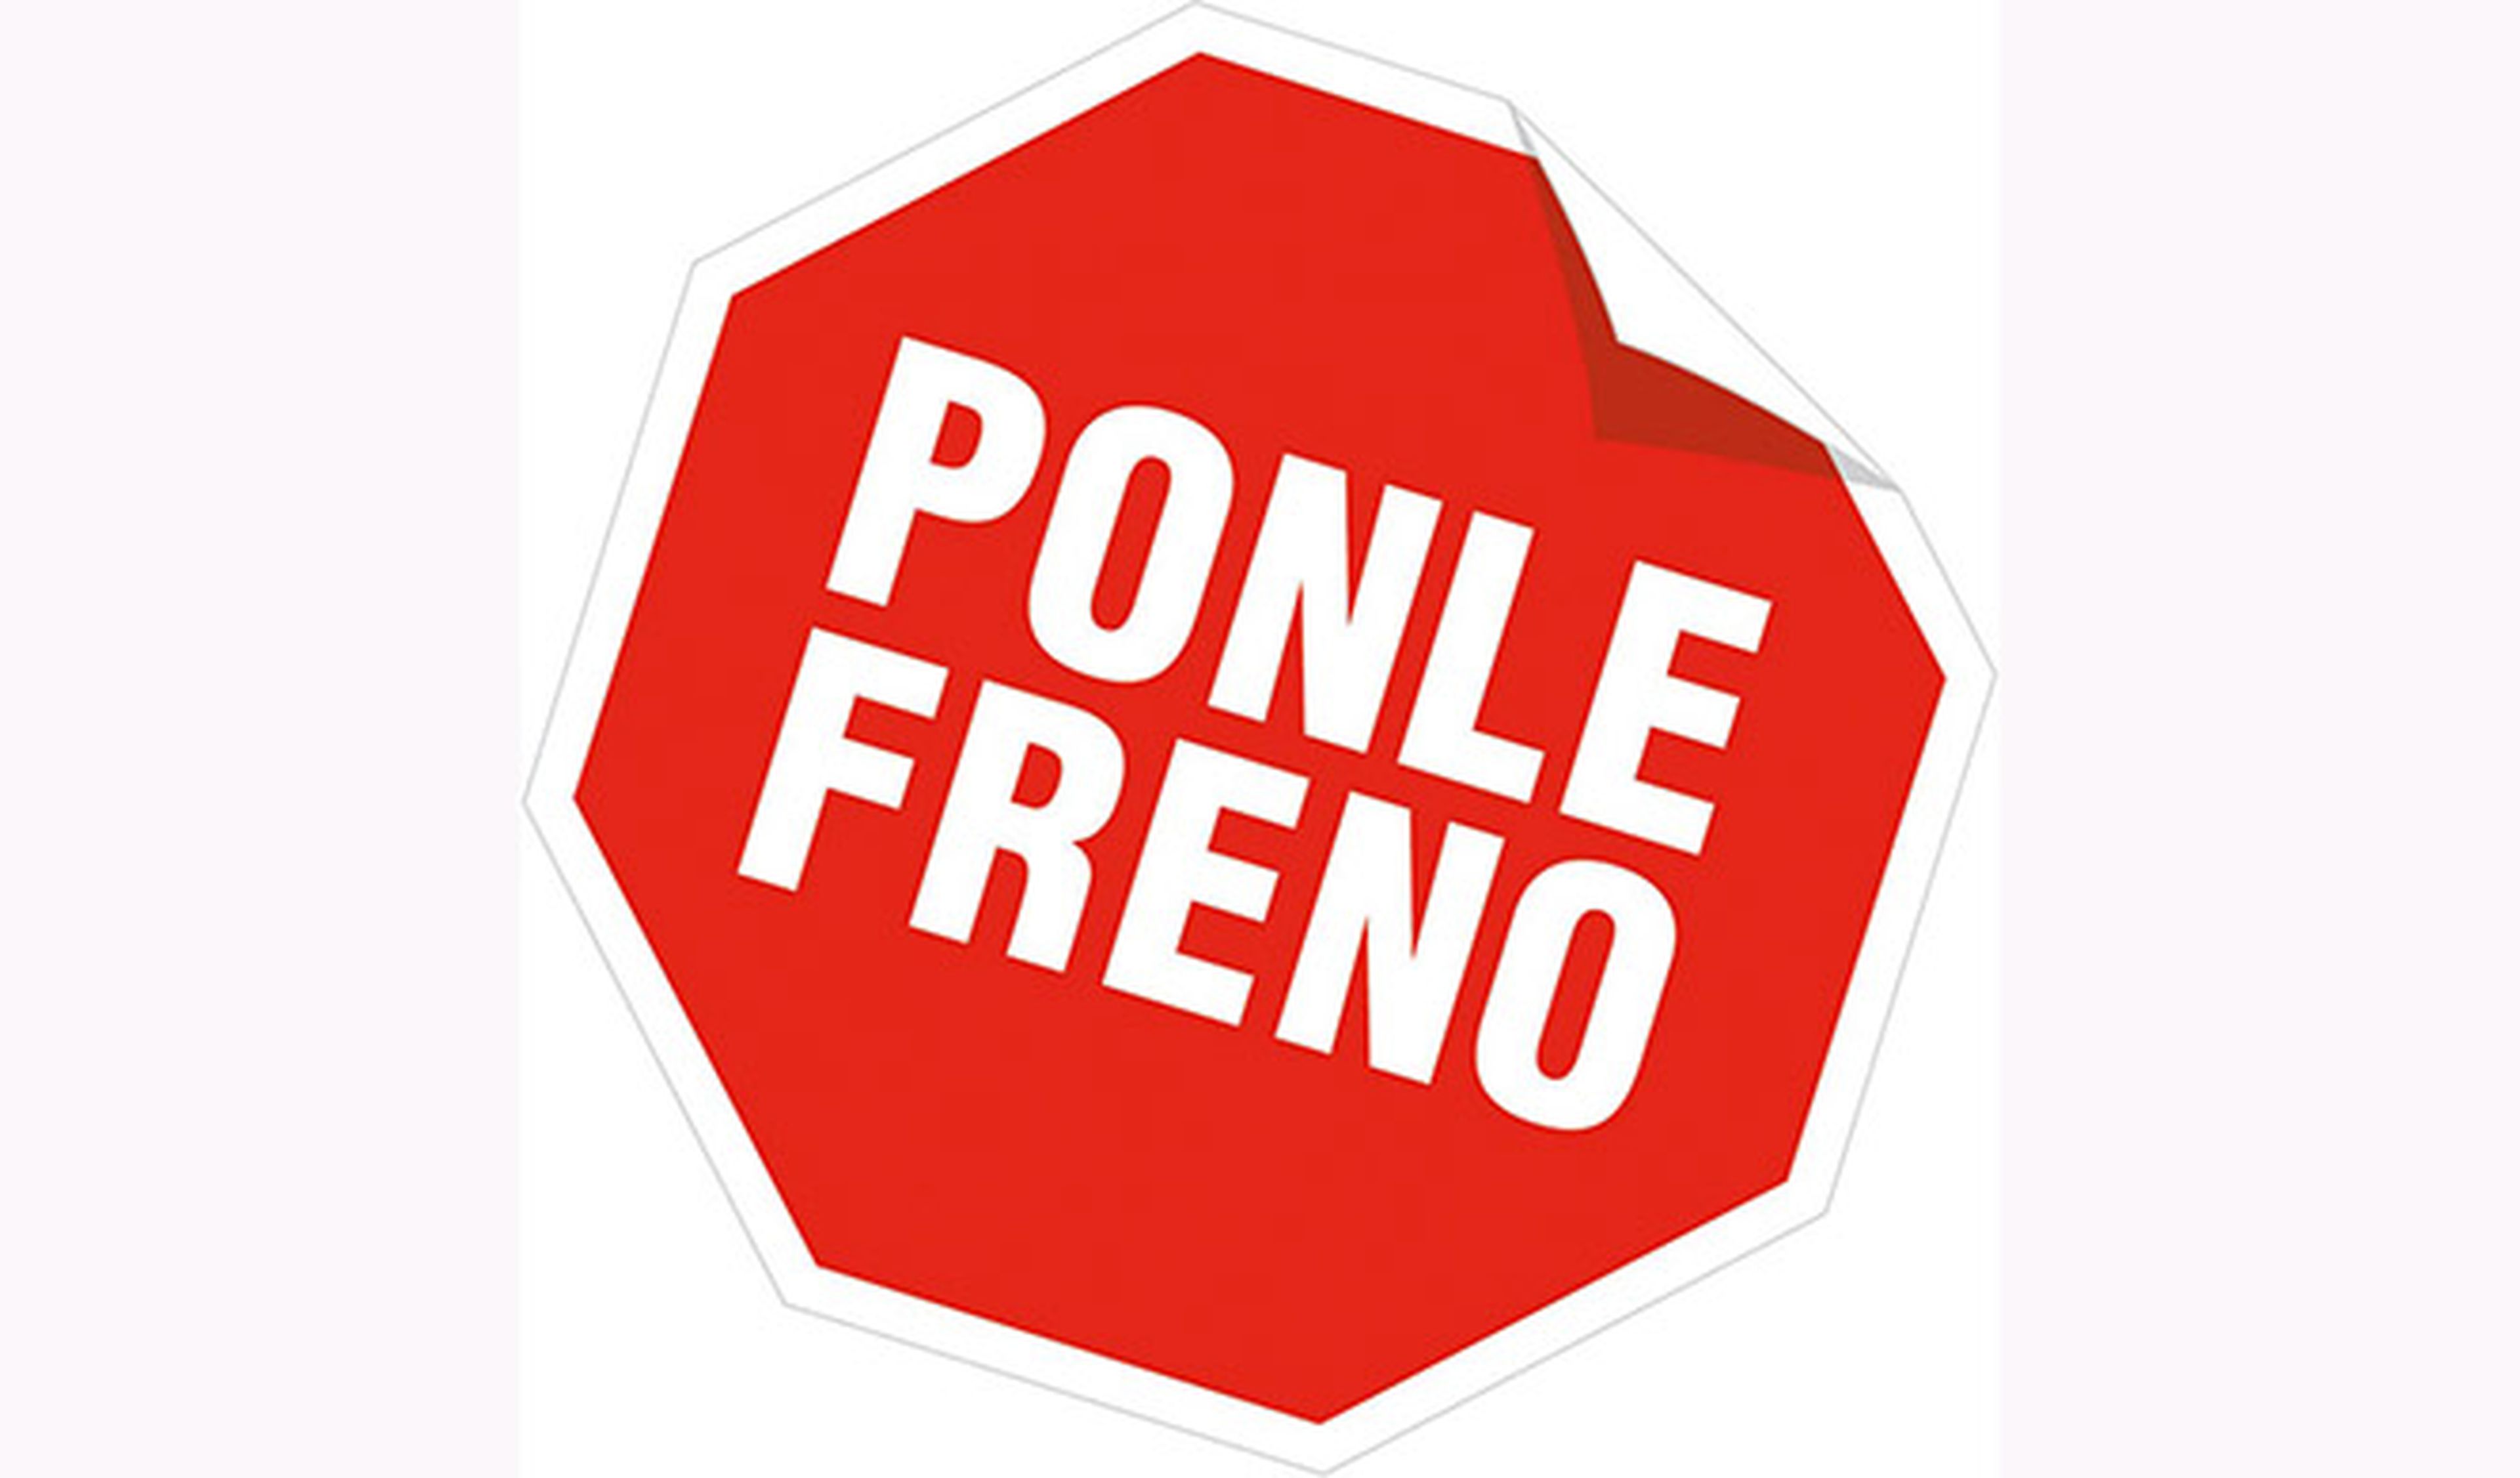 Solidarízate con Ponle Freno, el 28 de noviembre en Madrid